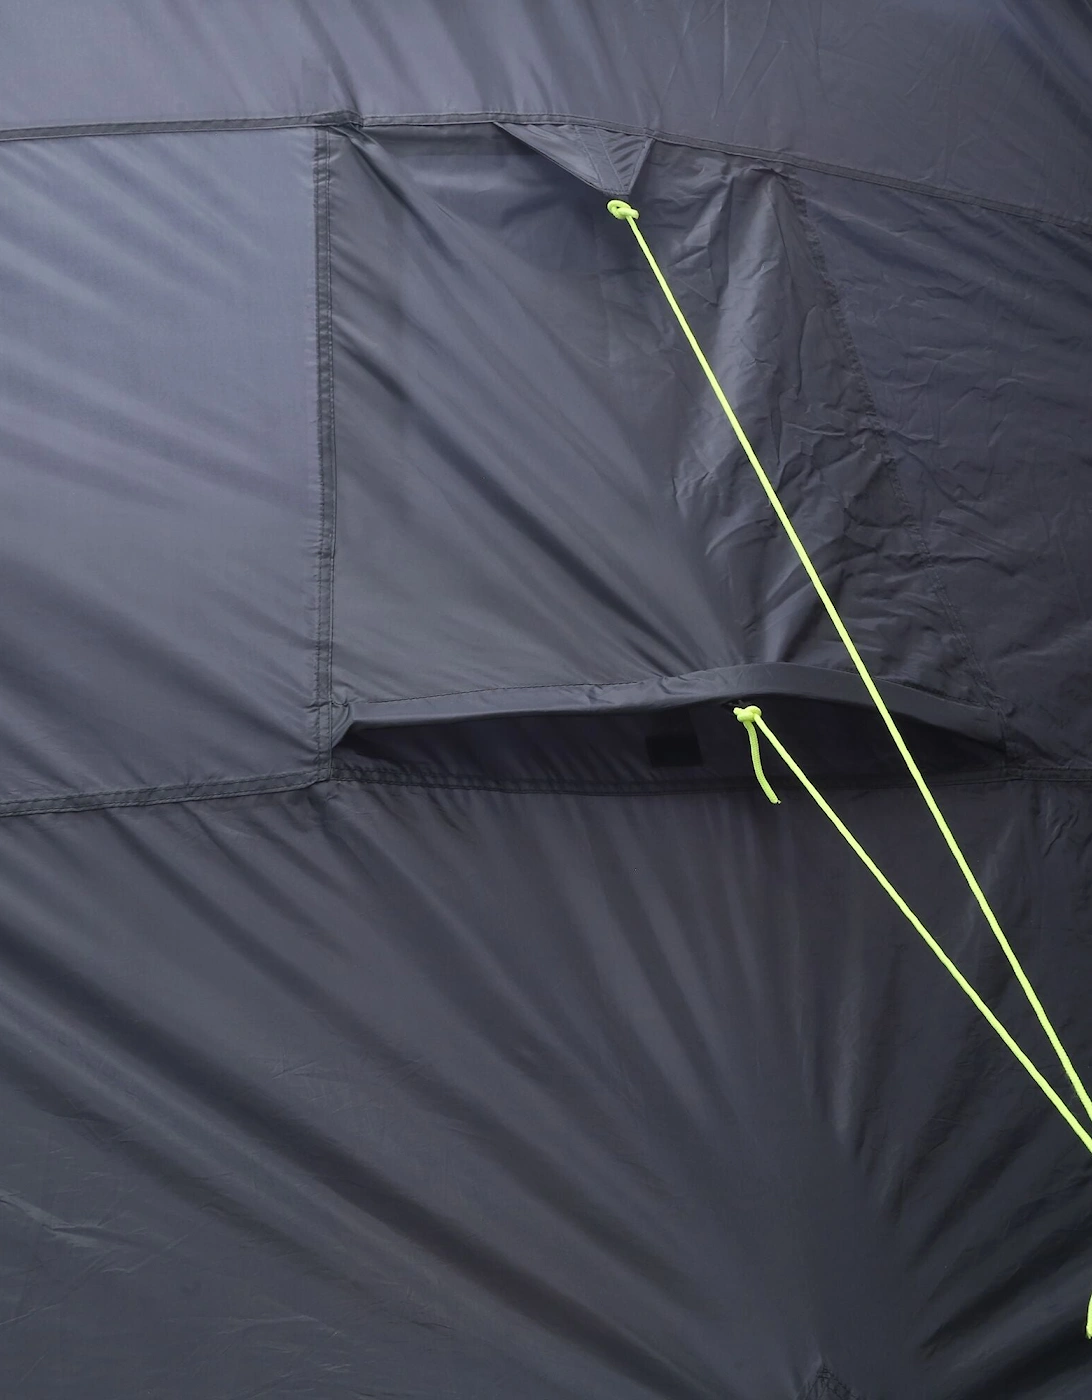 Kolima 2-Man Inflatable Tent - FrnchBl/Ebny - One Size